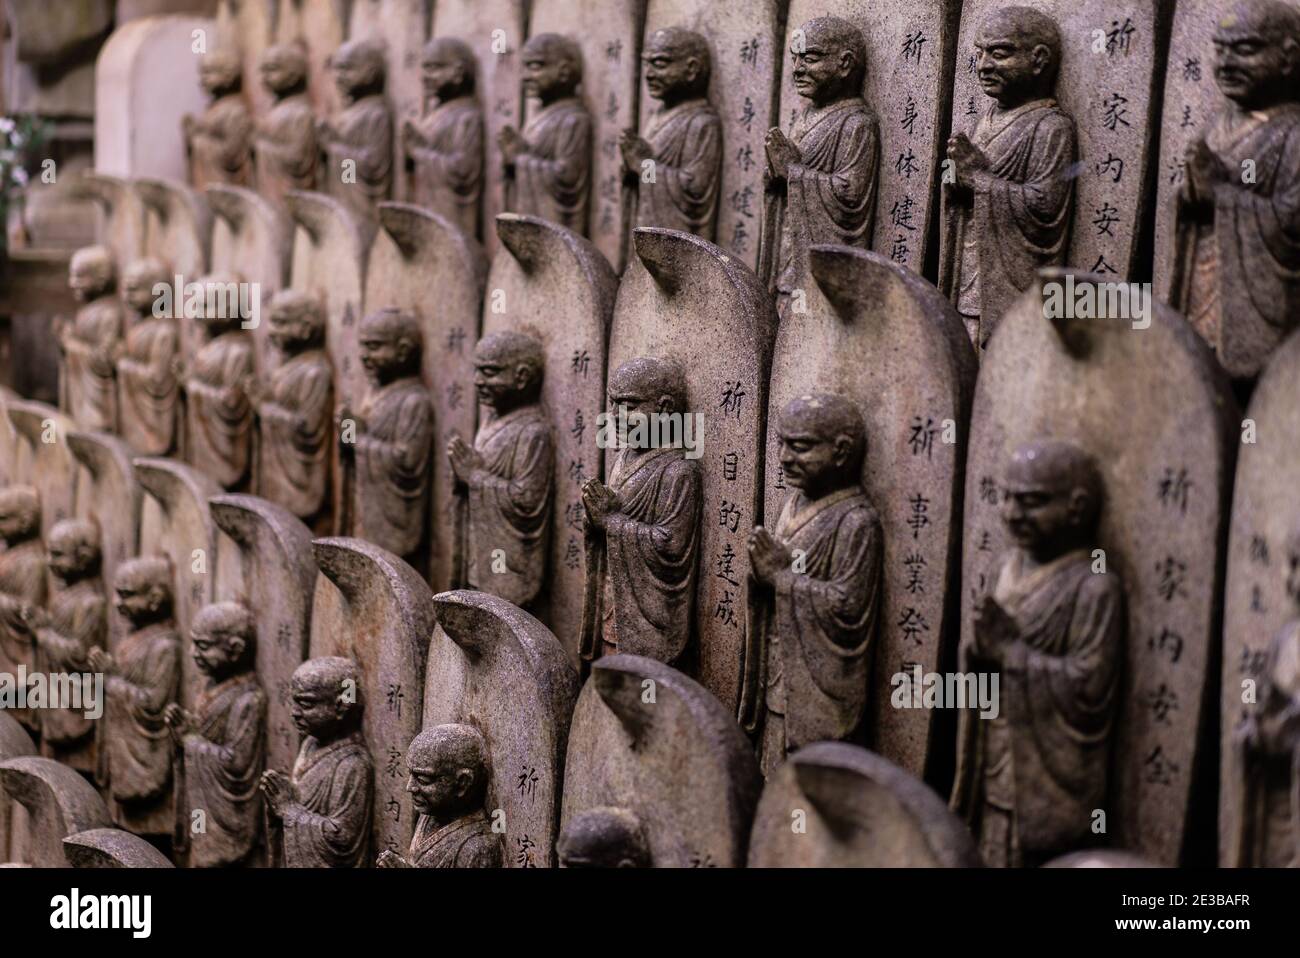 Cliché sélectif de petites statues similaires sur l'île Miyajima, au Japon Banque D'Images